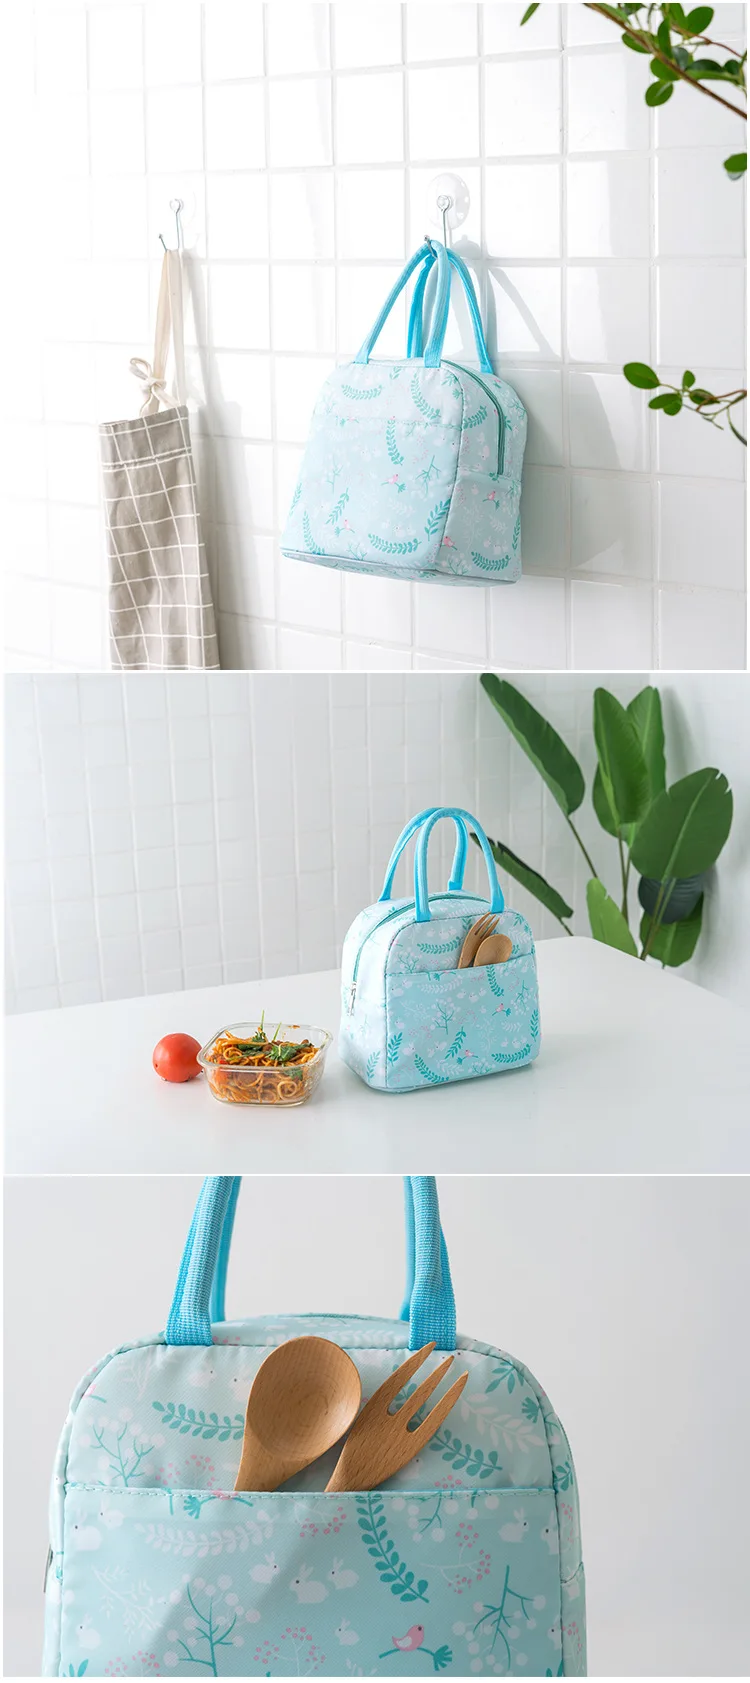 Водонепроницаемый ручной Портативный Термосумка для обедов утепленная снэк-коробка для обеда, для переноски сумка для хранения сумки для пикника сумка для еды-15